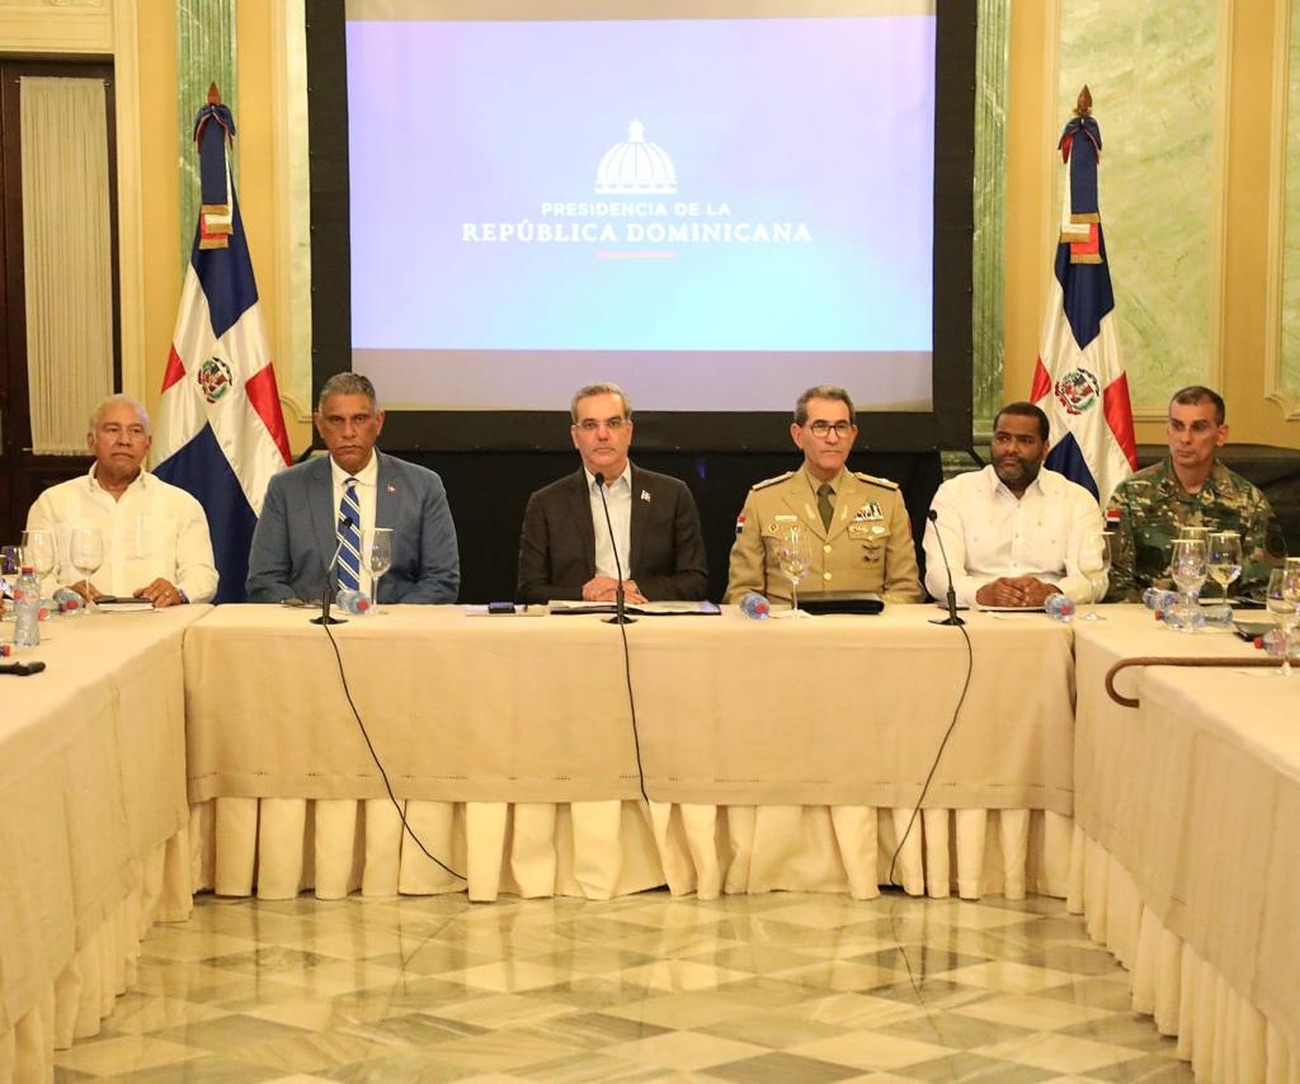 REPÚBLICA DOMINICANA: Presidente Abinader encabeza reunión con liderazgo político nacional